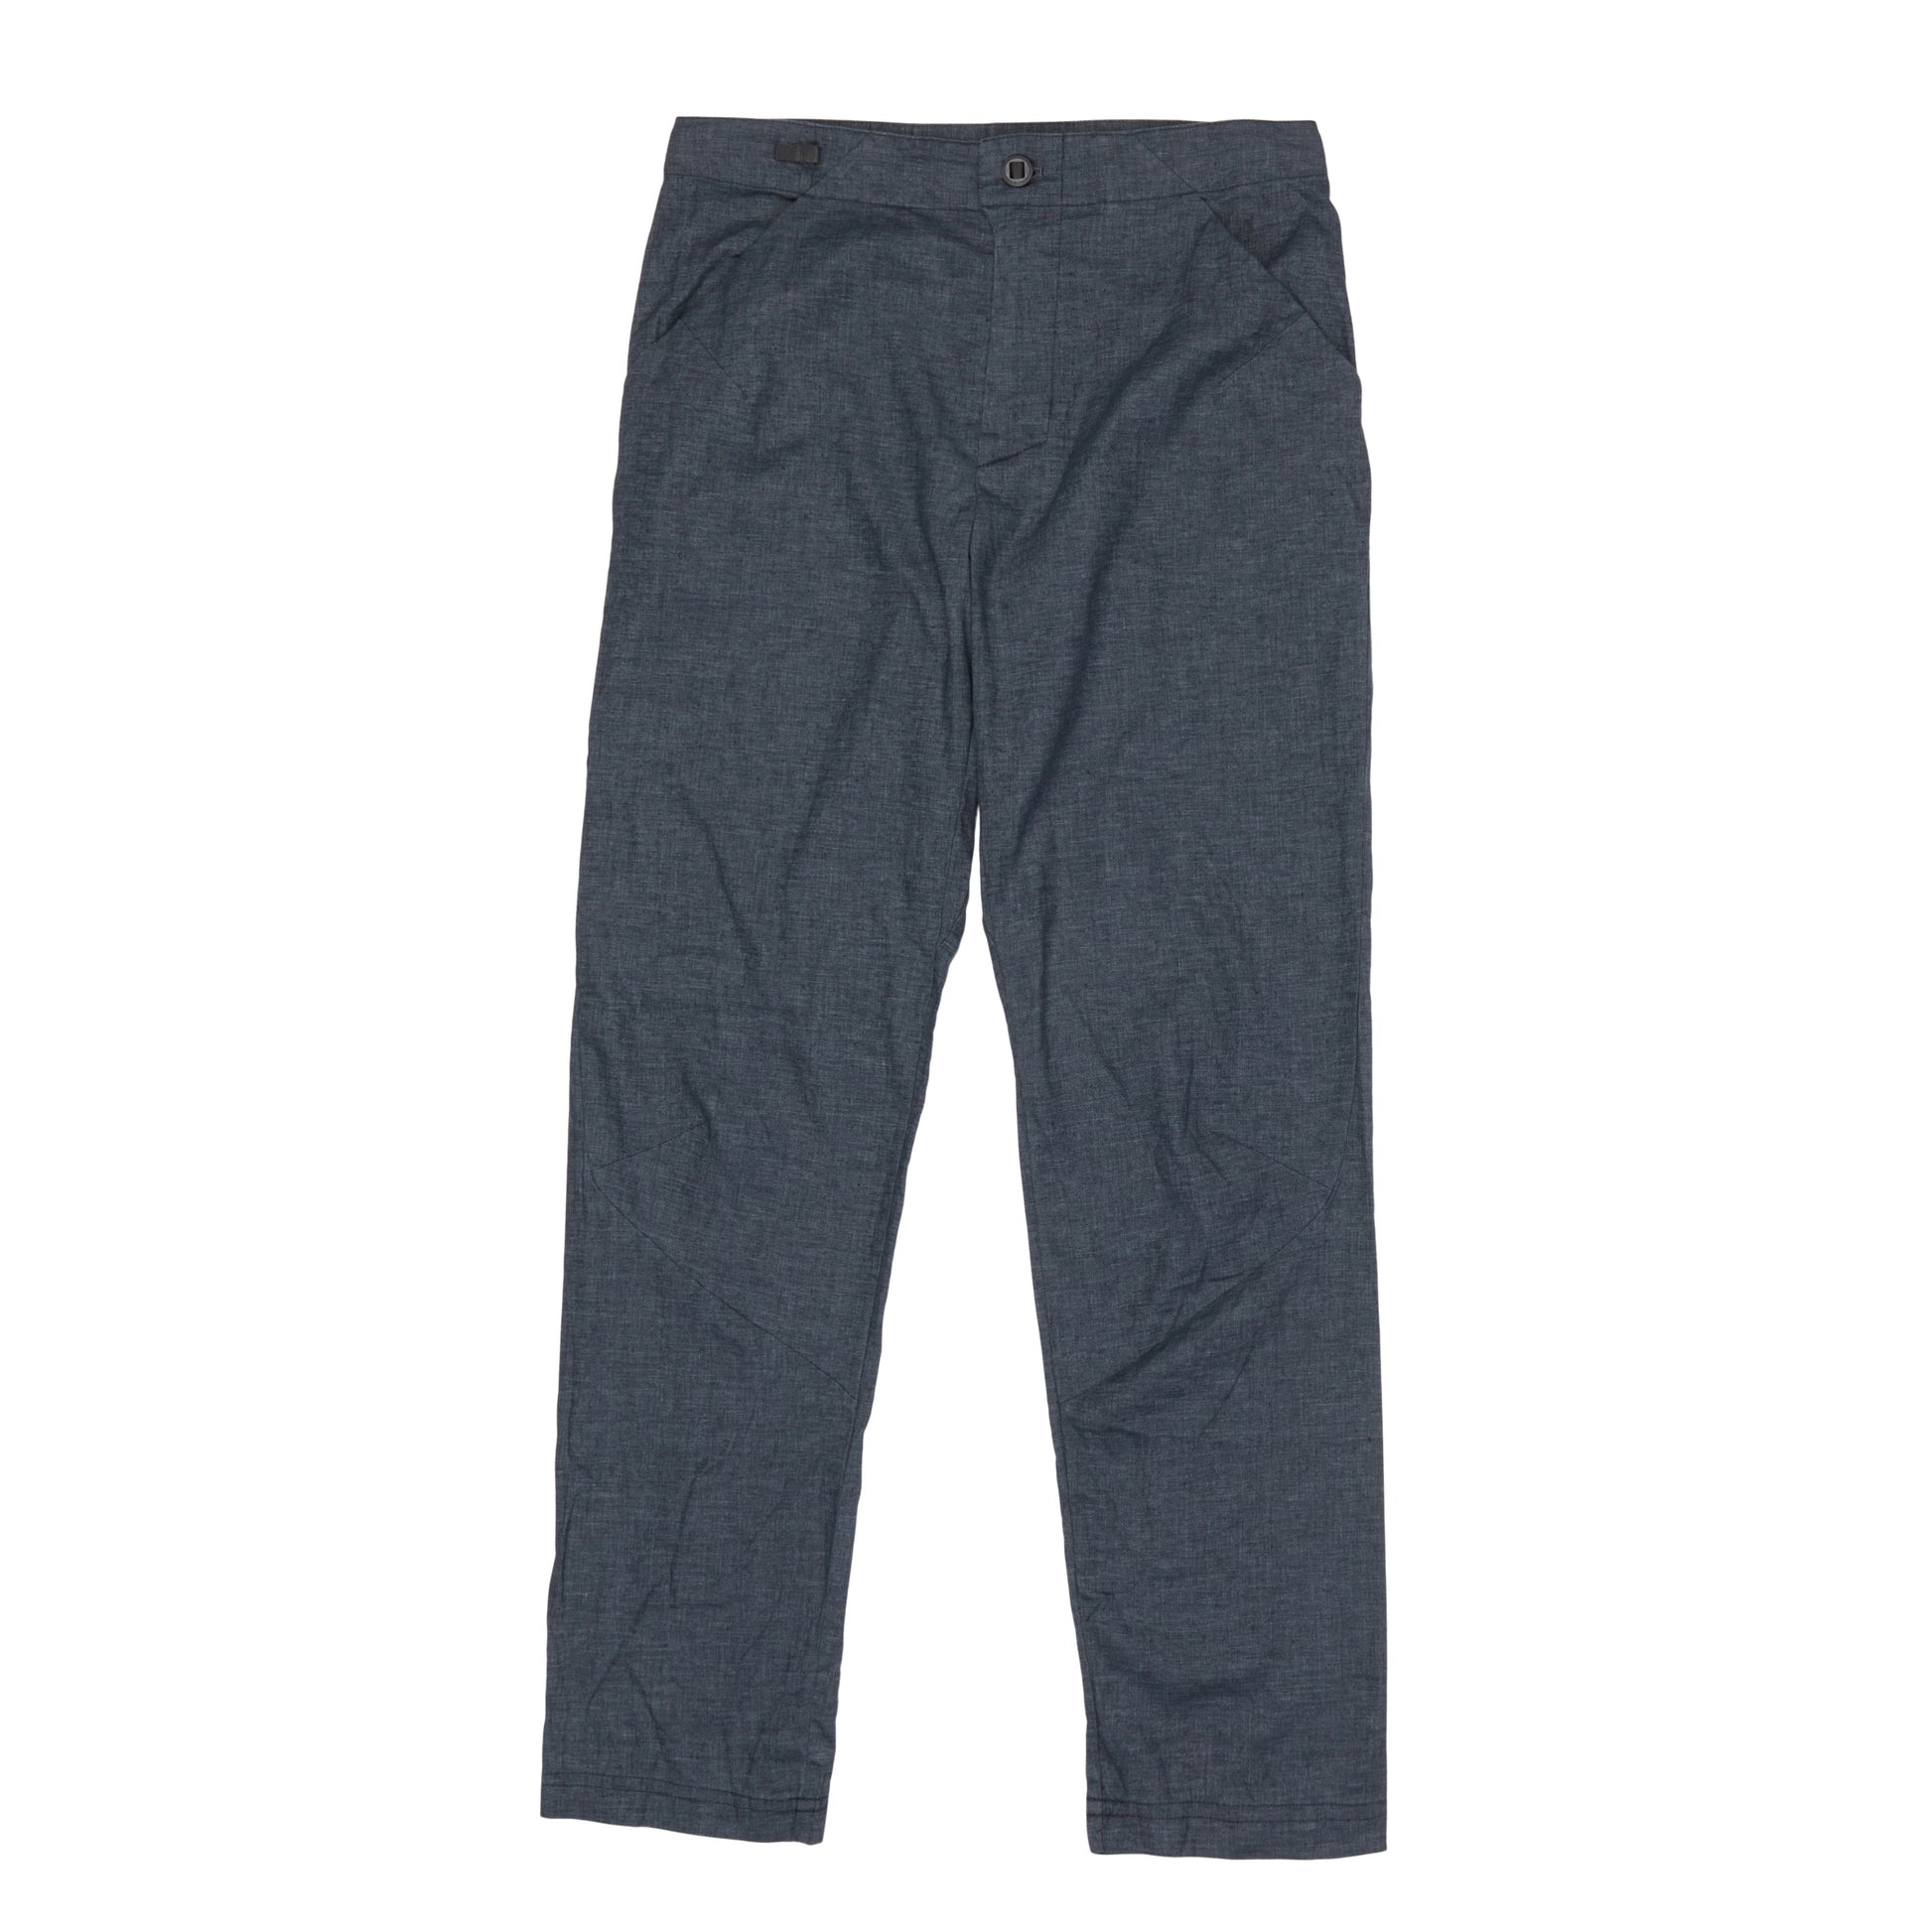 Patagonia Hampi Rock Pants - Casual trousers Men's